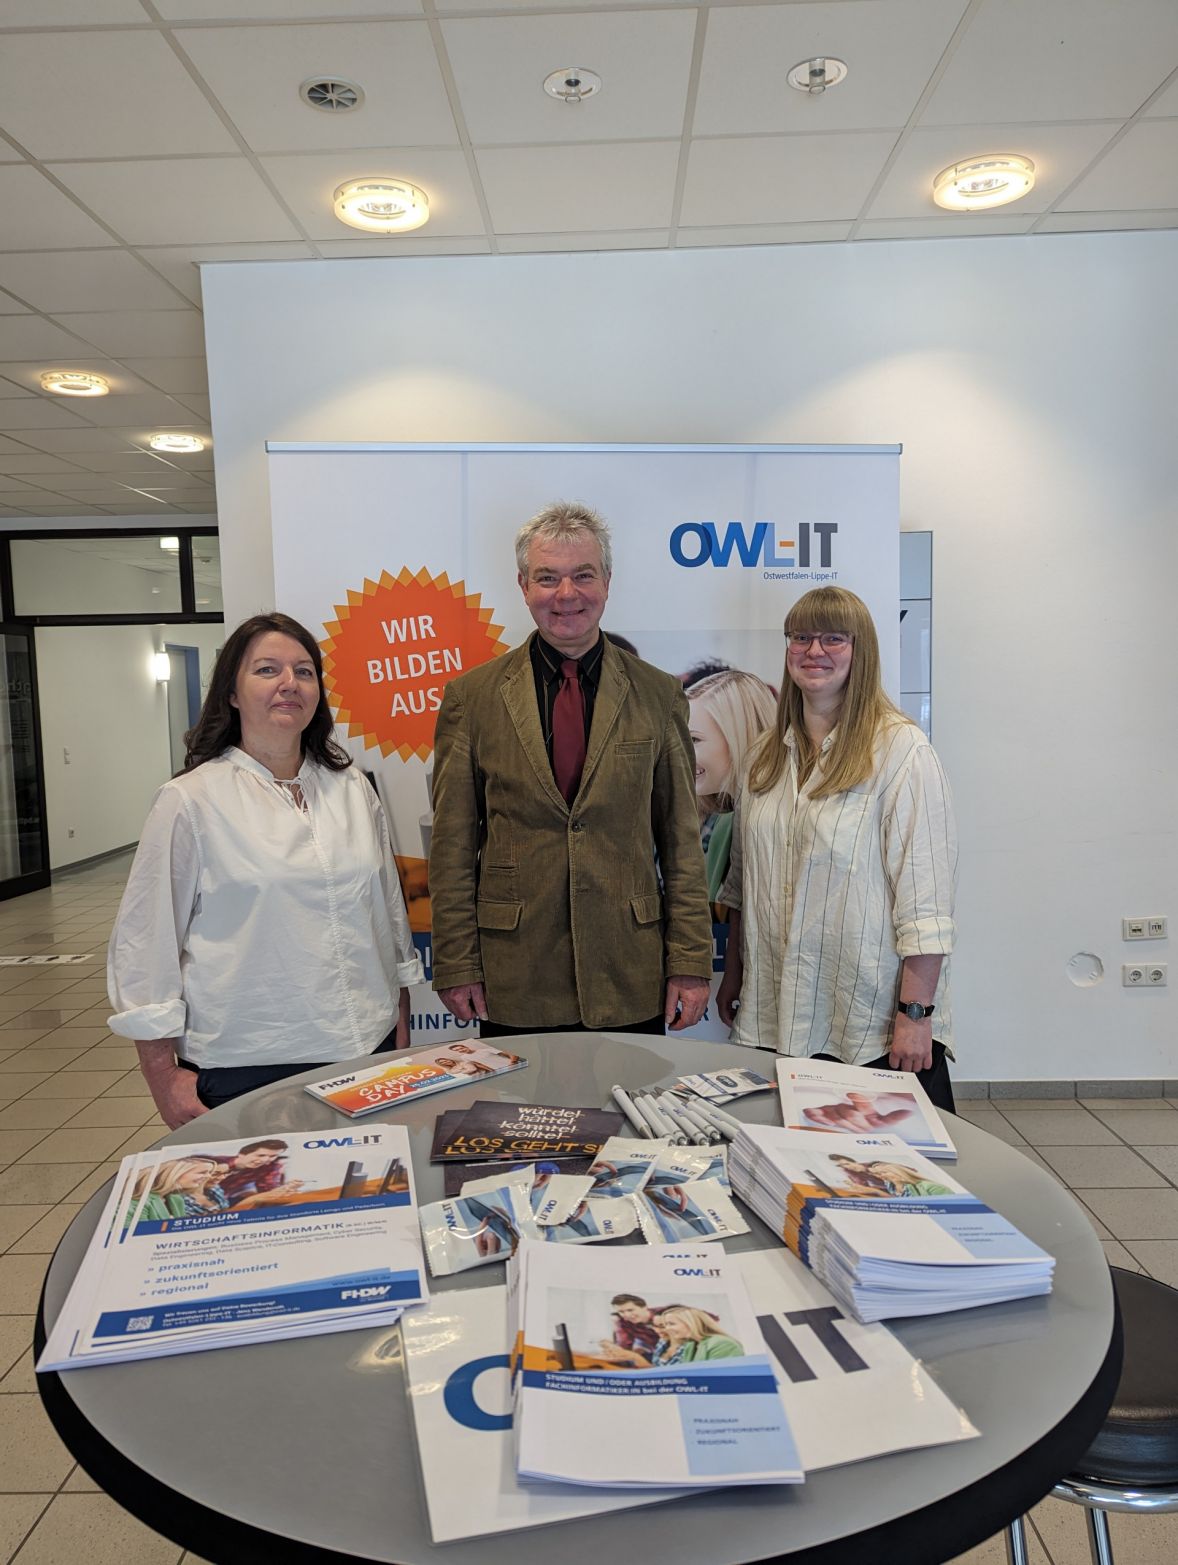 Der Informationsstand von der OWL-IT auf dem Campus Day der FHDW: Beatrix Hucht (GKD Paderborn), Frank Albert (OWL-IT) und die Auszubildende Marie Willmann stellen den Ausbildungsbetrieb OWL-IT und das dazugehörige Angebot in Paderborn vor. @krz